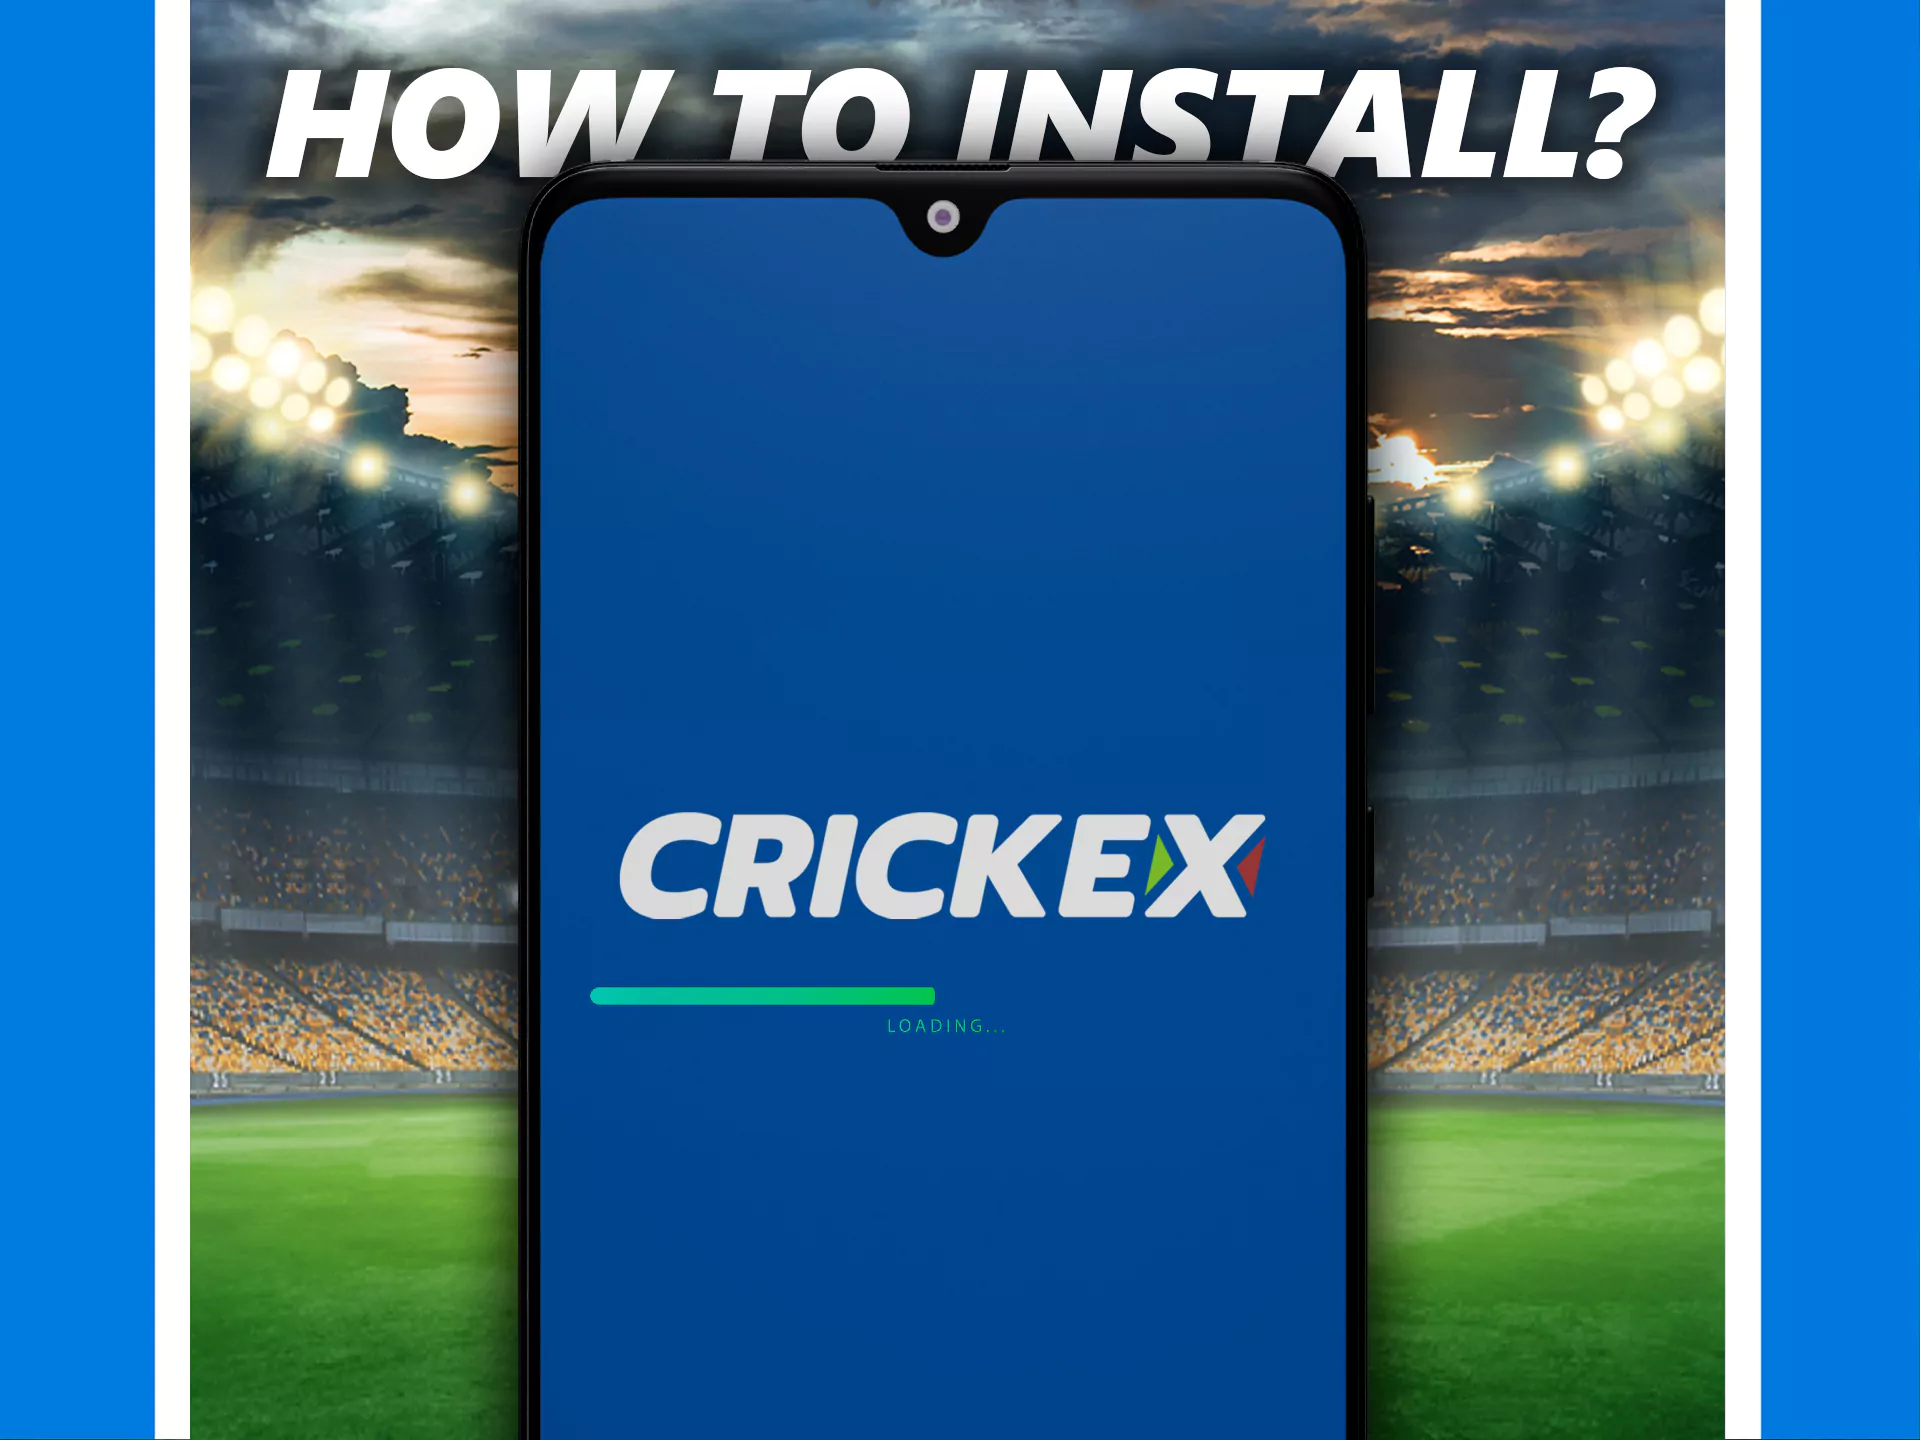 नीचे दिए गए निर्देशों का पालन करते हुए Crickex ऐप इंस्टॉल करें।